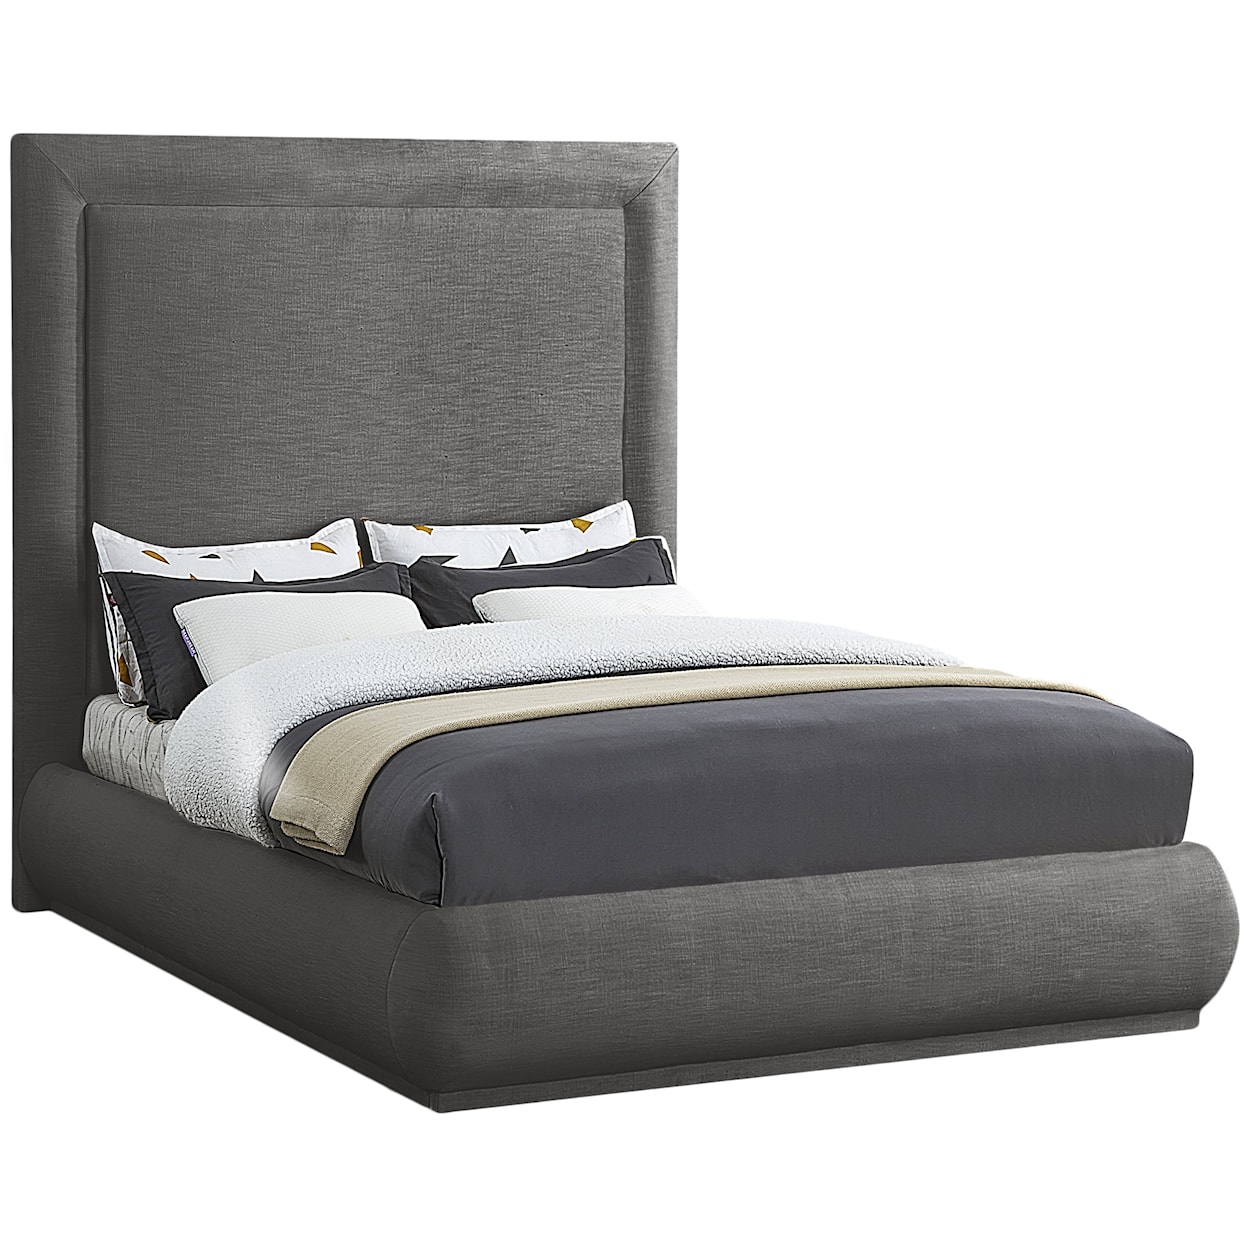 Meridian Furniture Brooke Queen Bed